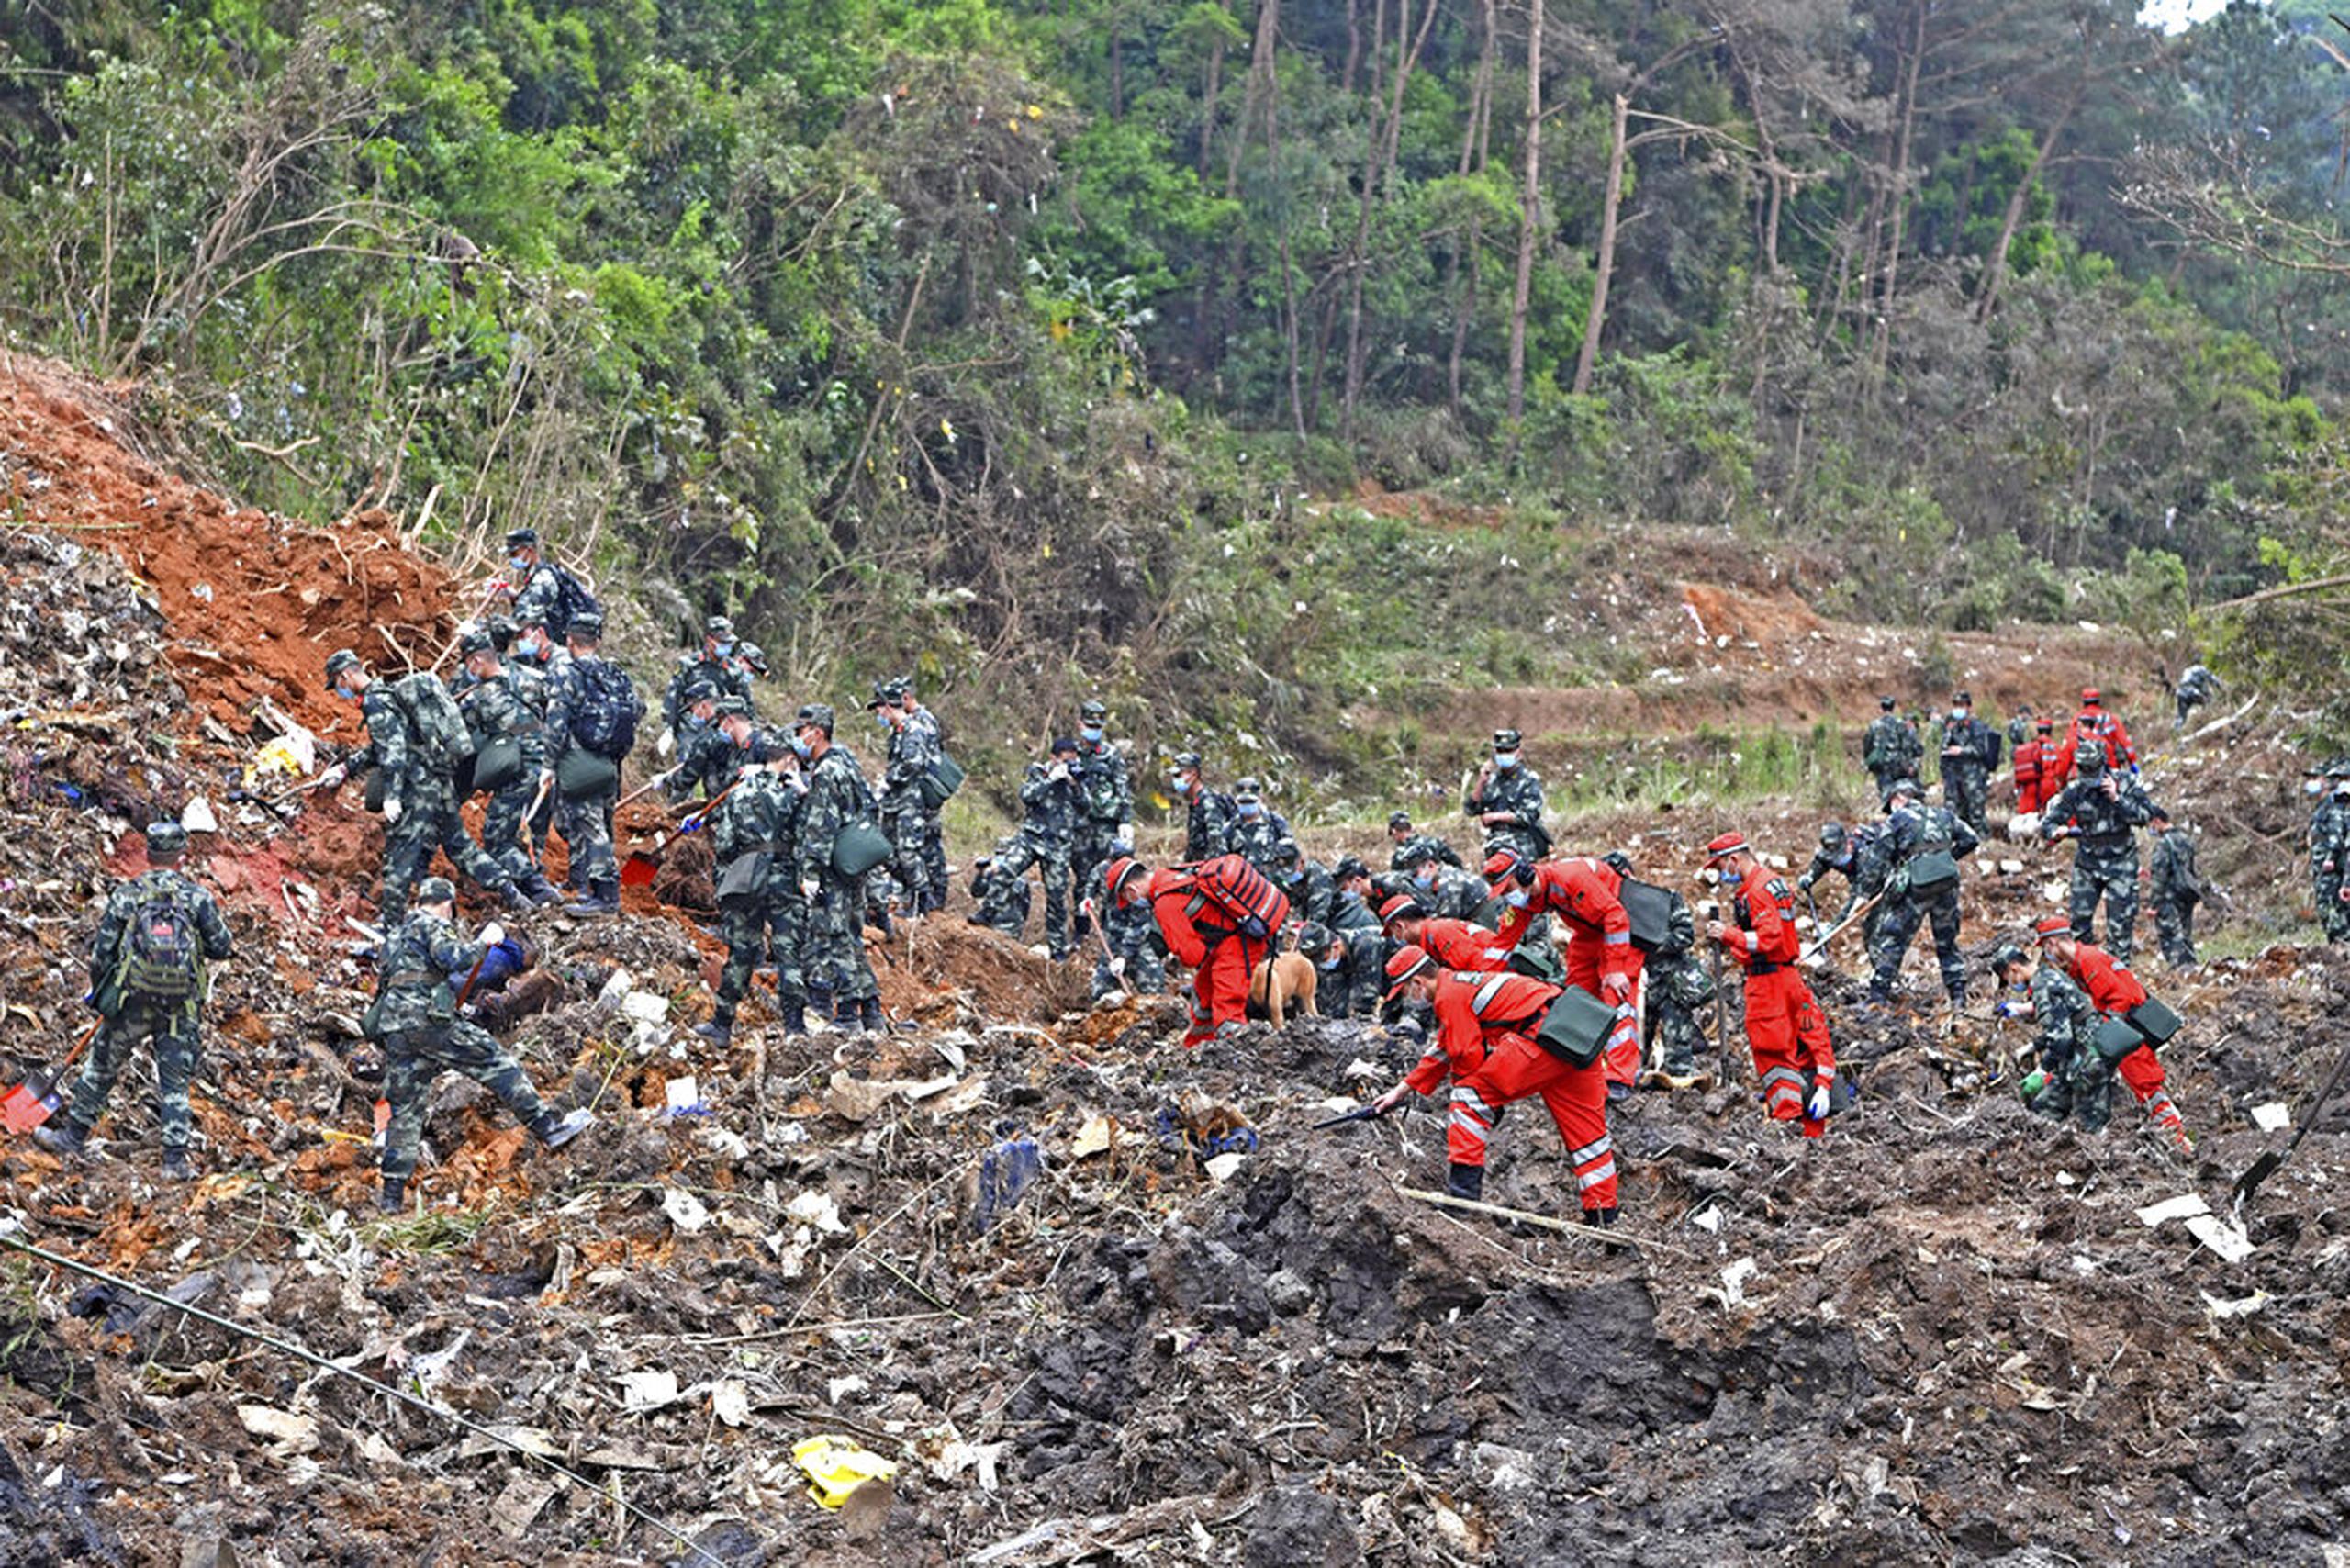 Rescatistas buscan las cajas negras en el lugar donde se estrelló el avión, en el condado de Tengxian, el 22 de marzo de 2022.